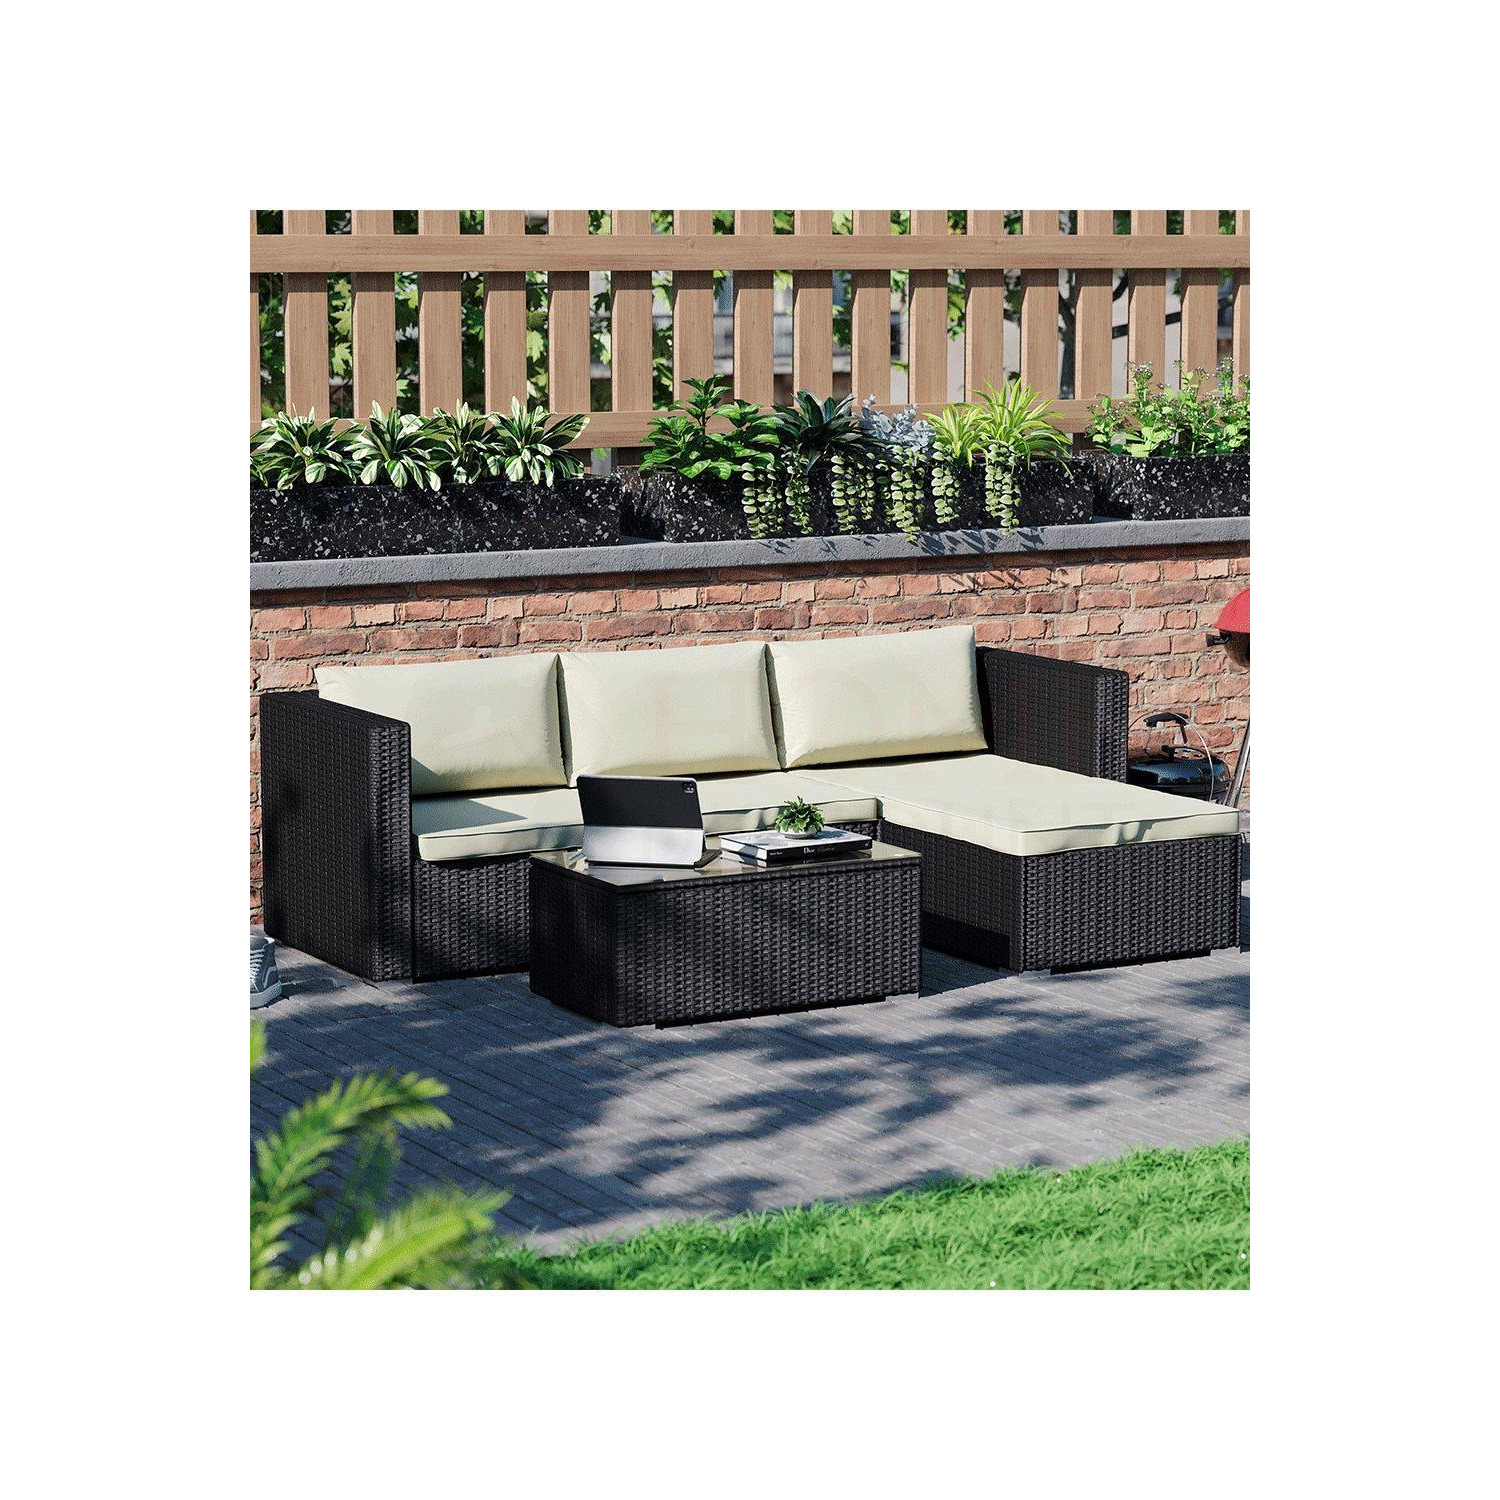 5 Pc Garden Vida Hampton 4 Seater Rattan Set Sofa Table Outdoor Garden Furniture - image 1